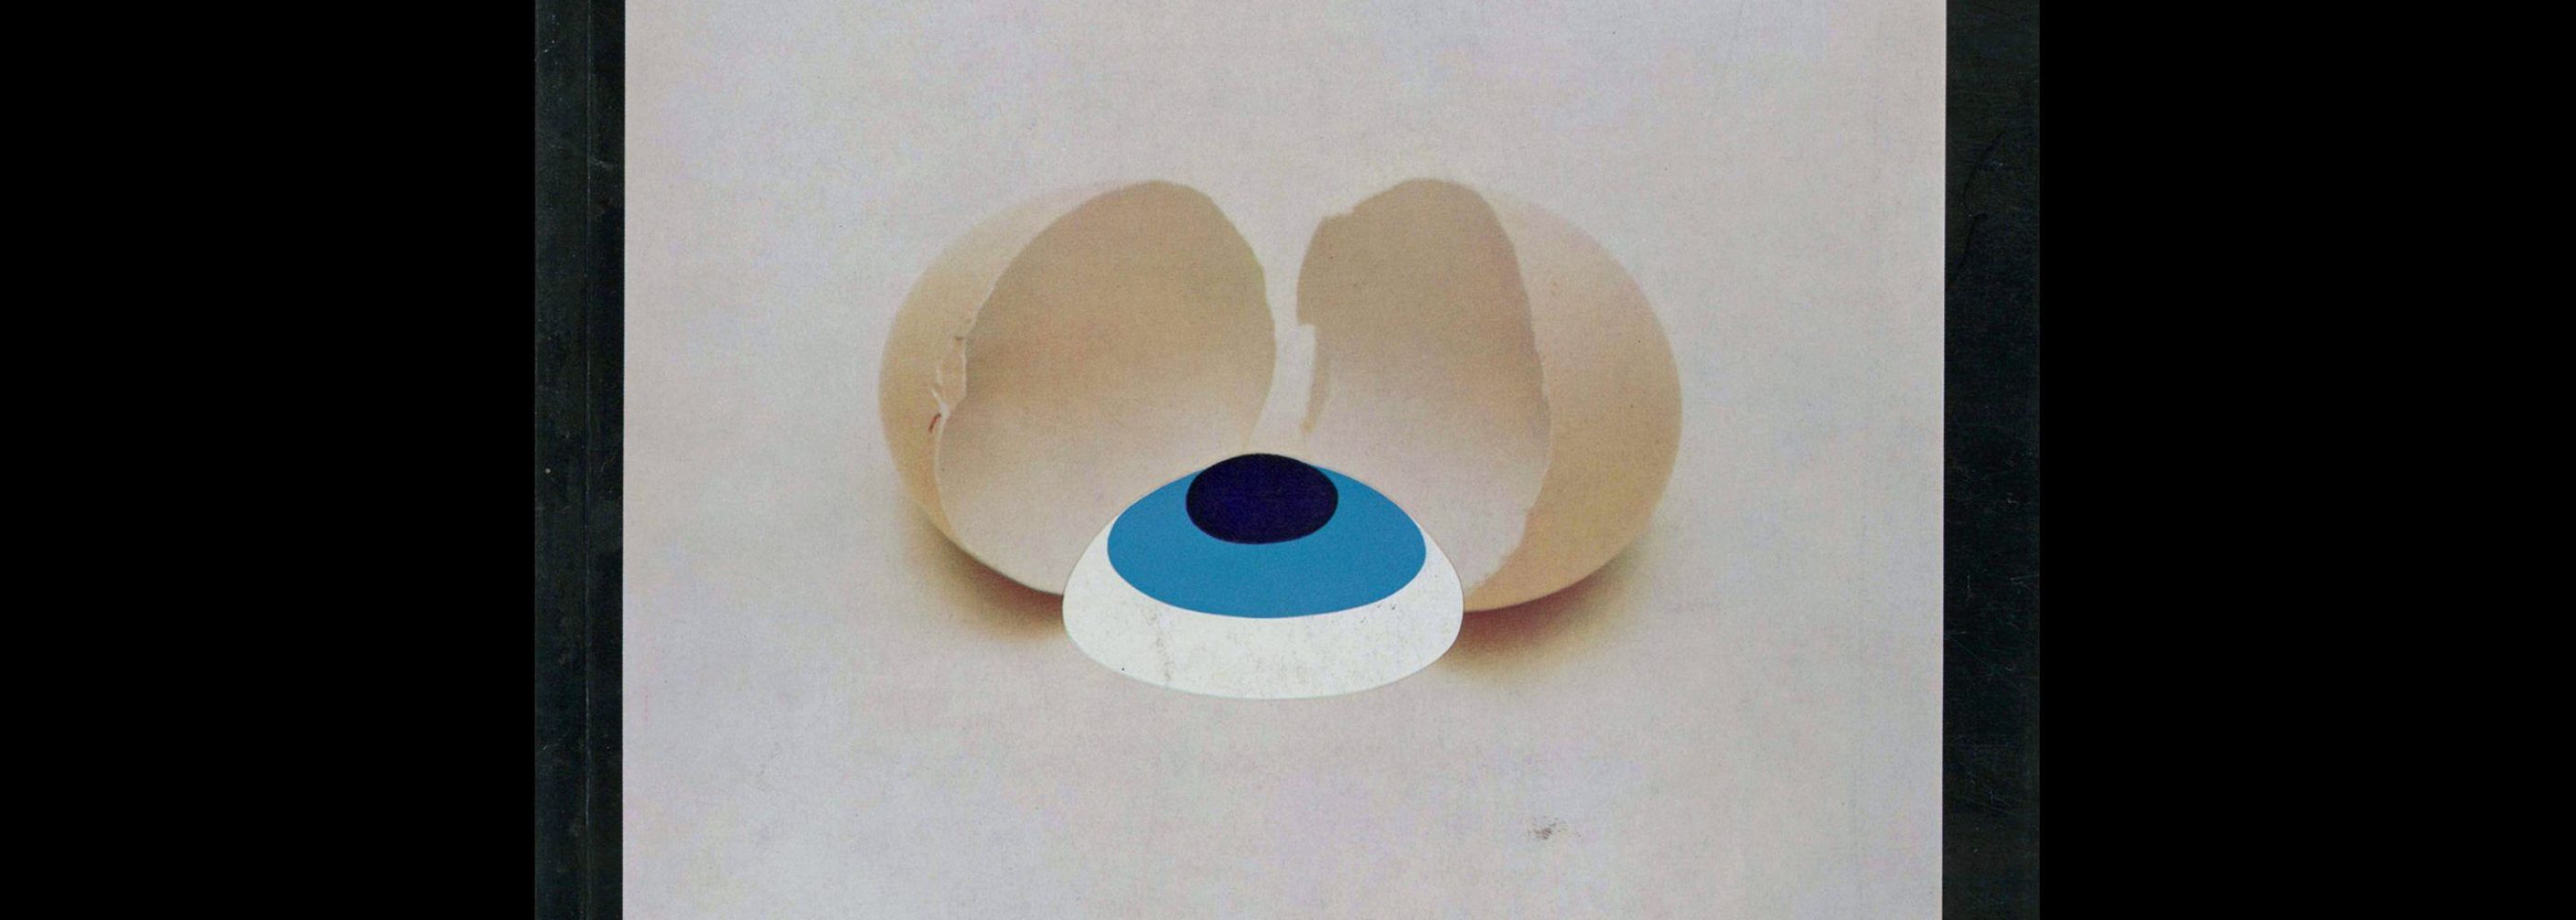 Gebrauchsgraphik, 12, 1967. Cover design by Lutz Roeder